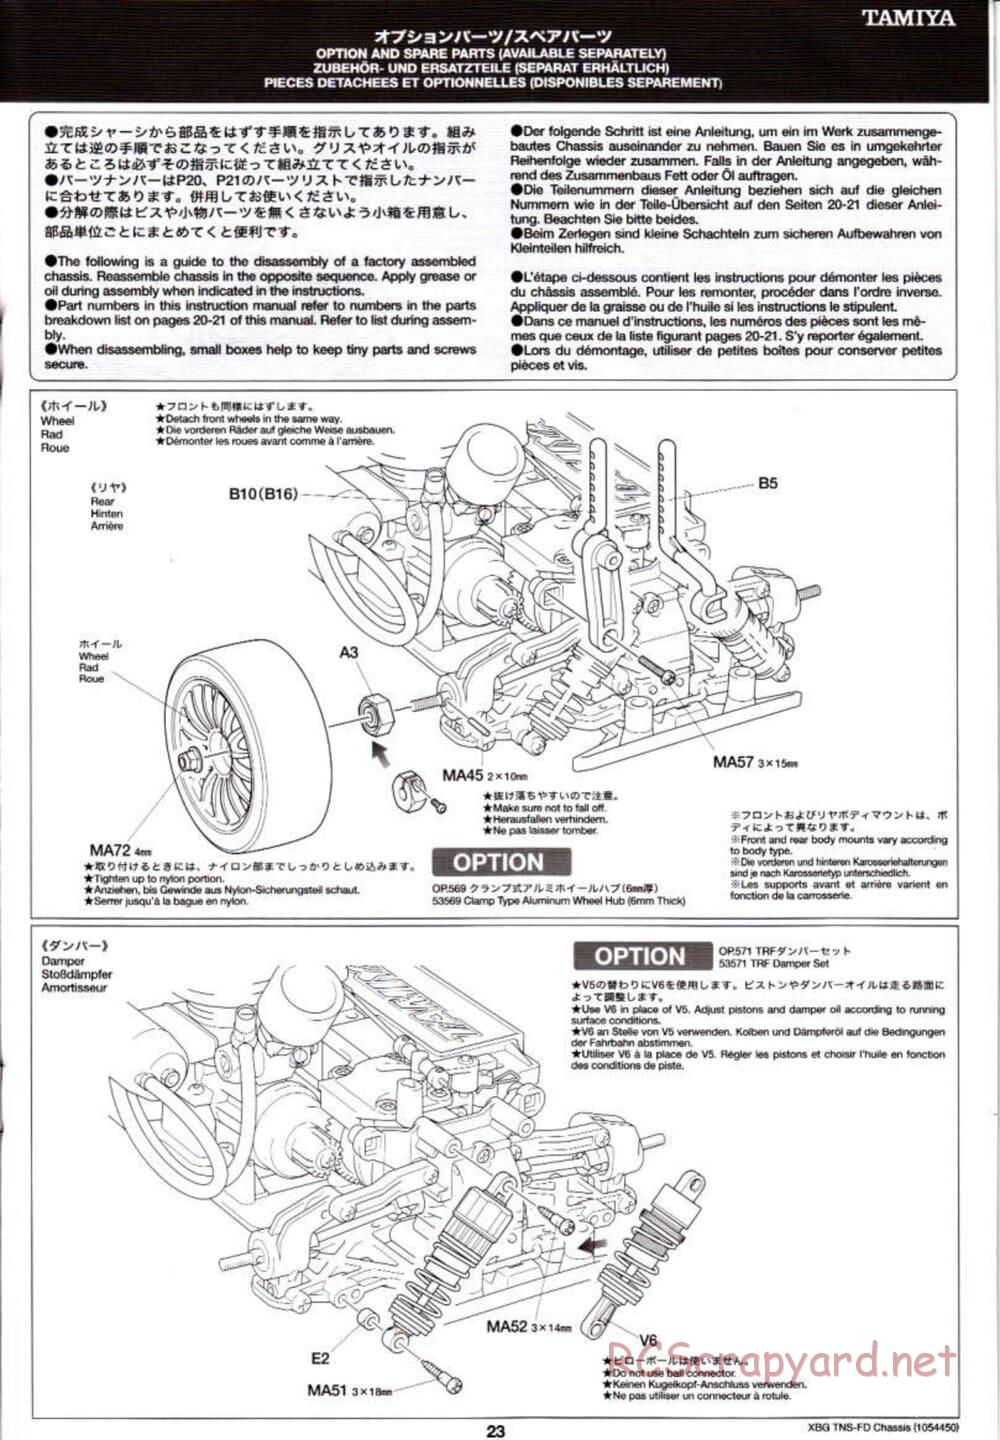 Tamiya - TNS-FD Chassis - Manual - Page 23